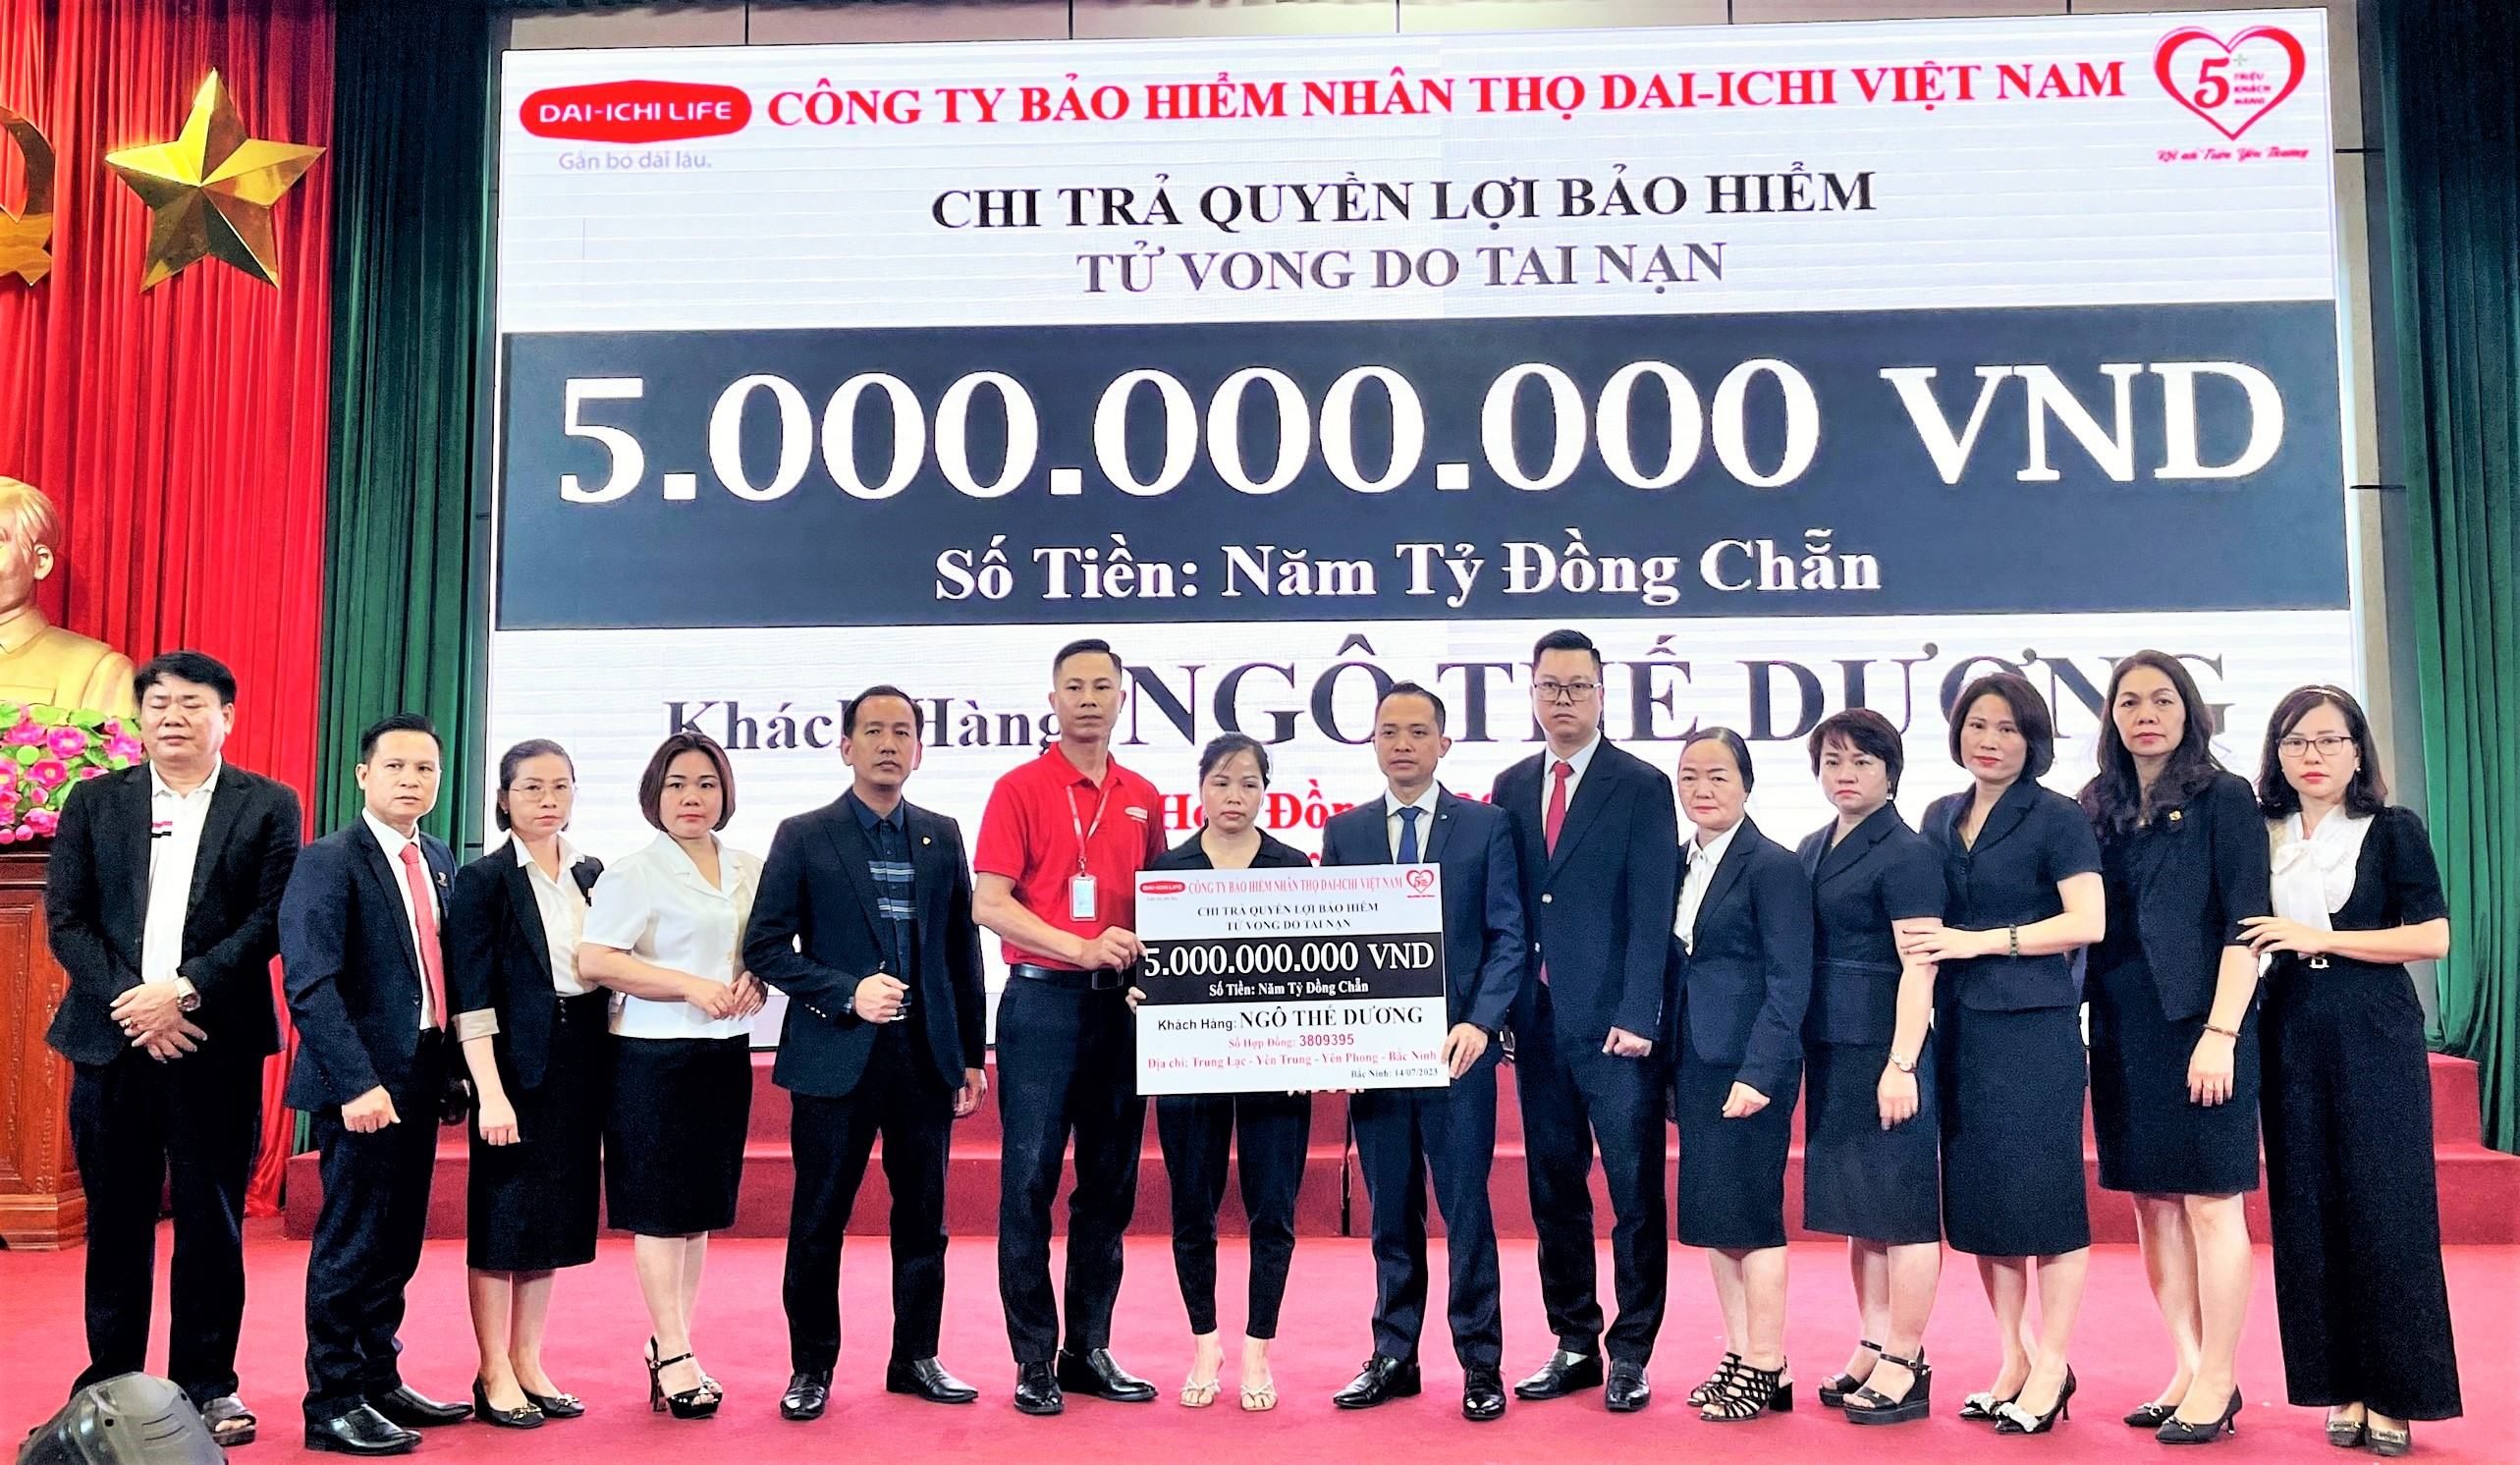 Dai-ichi Life Việt Nam chi trả 5 tỷ đồng quyền lợi bảo hiểm cho một khách hàng tại tỉnh Bắc Ninh